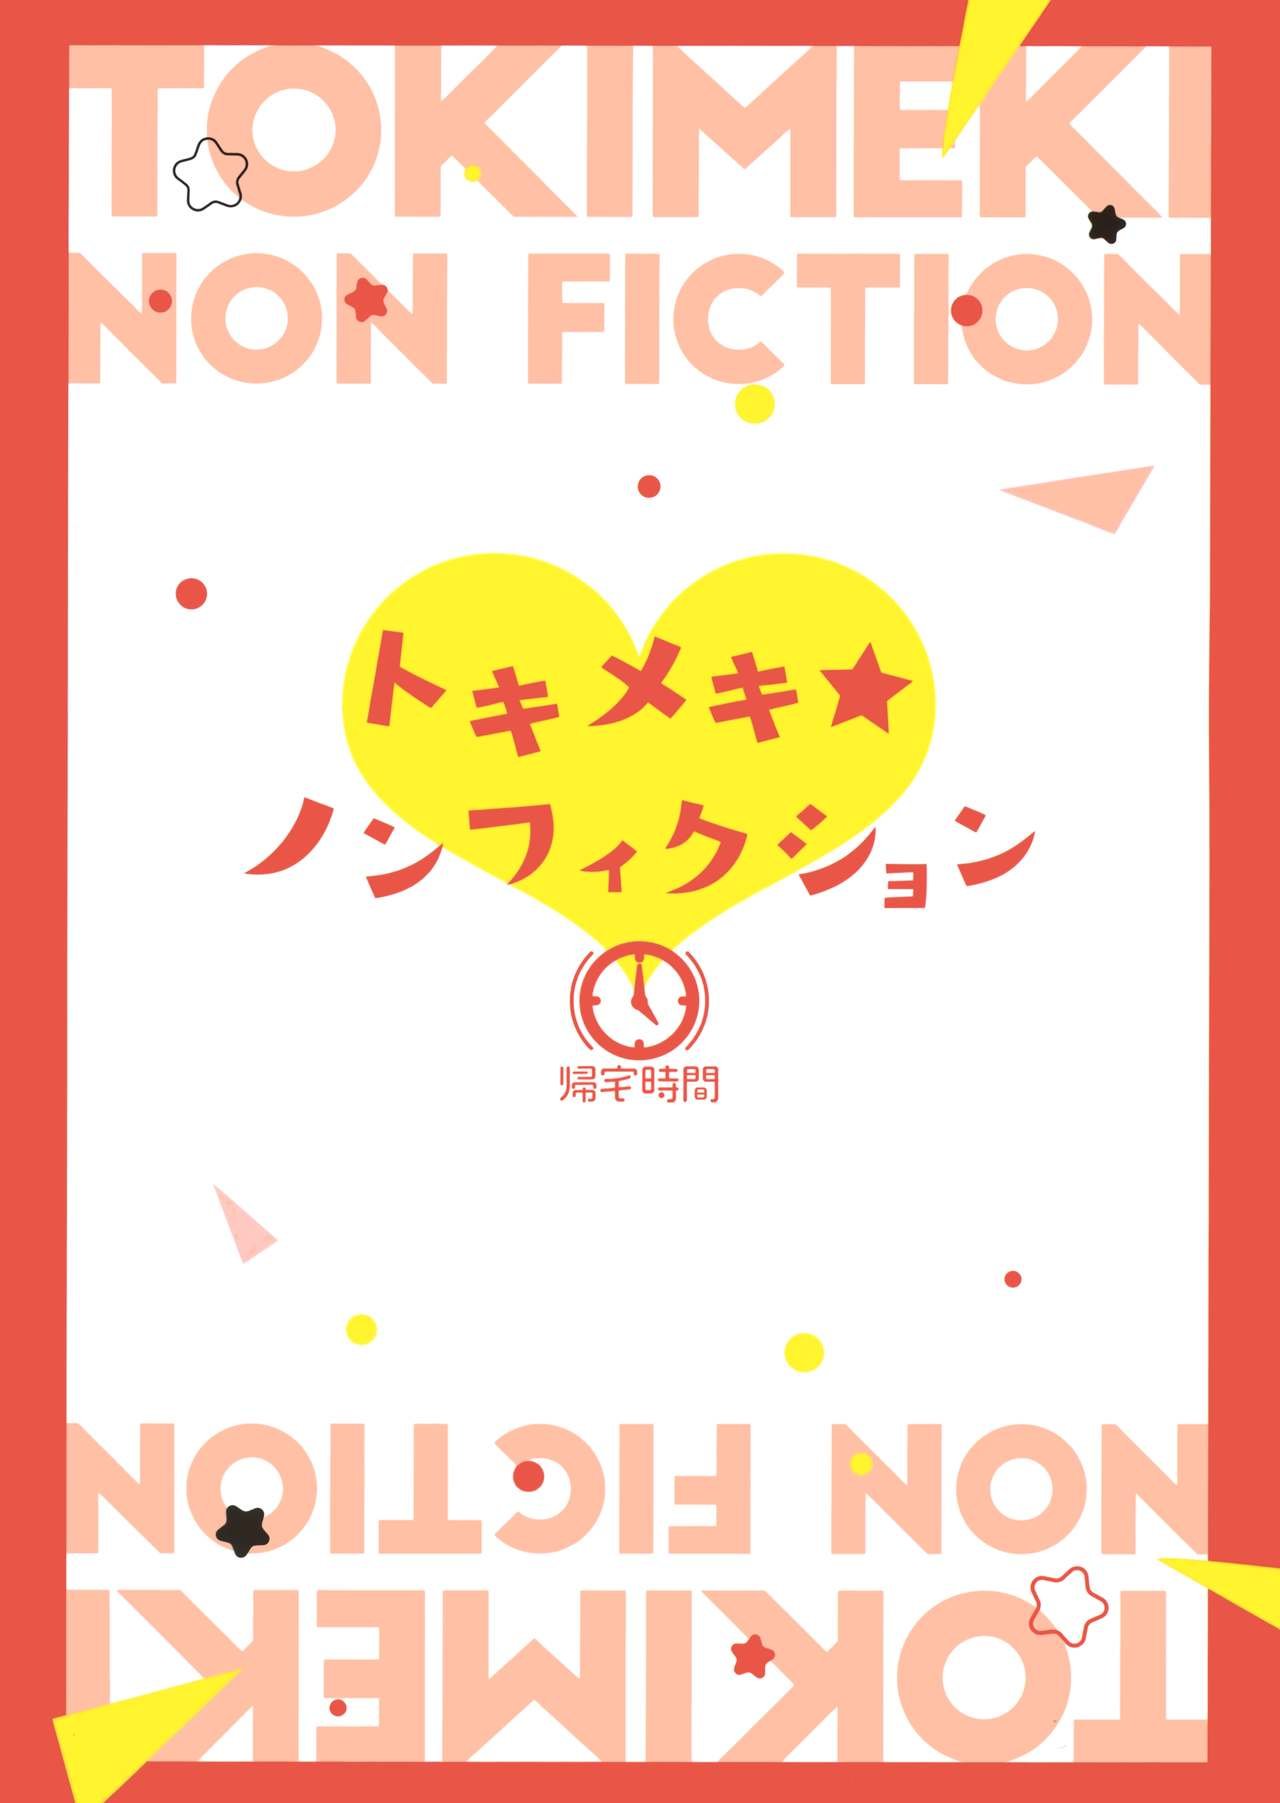 Tokimeki Nonfiction - 27